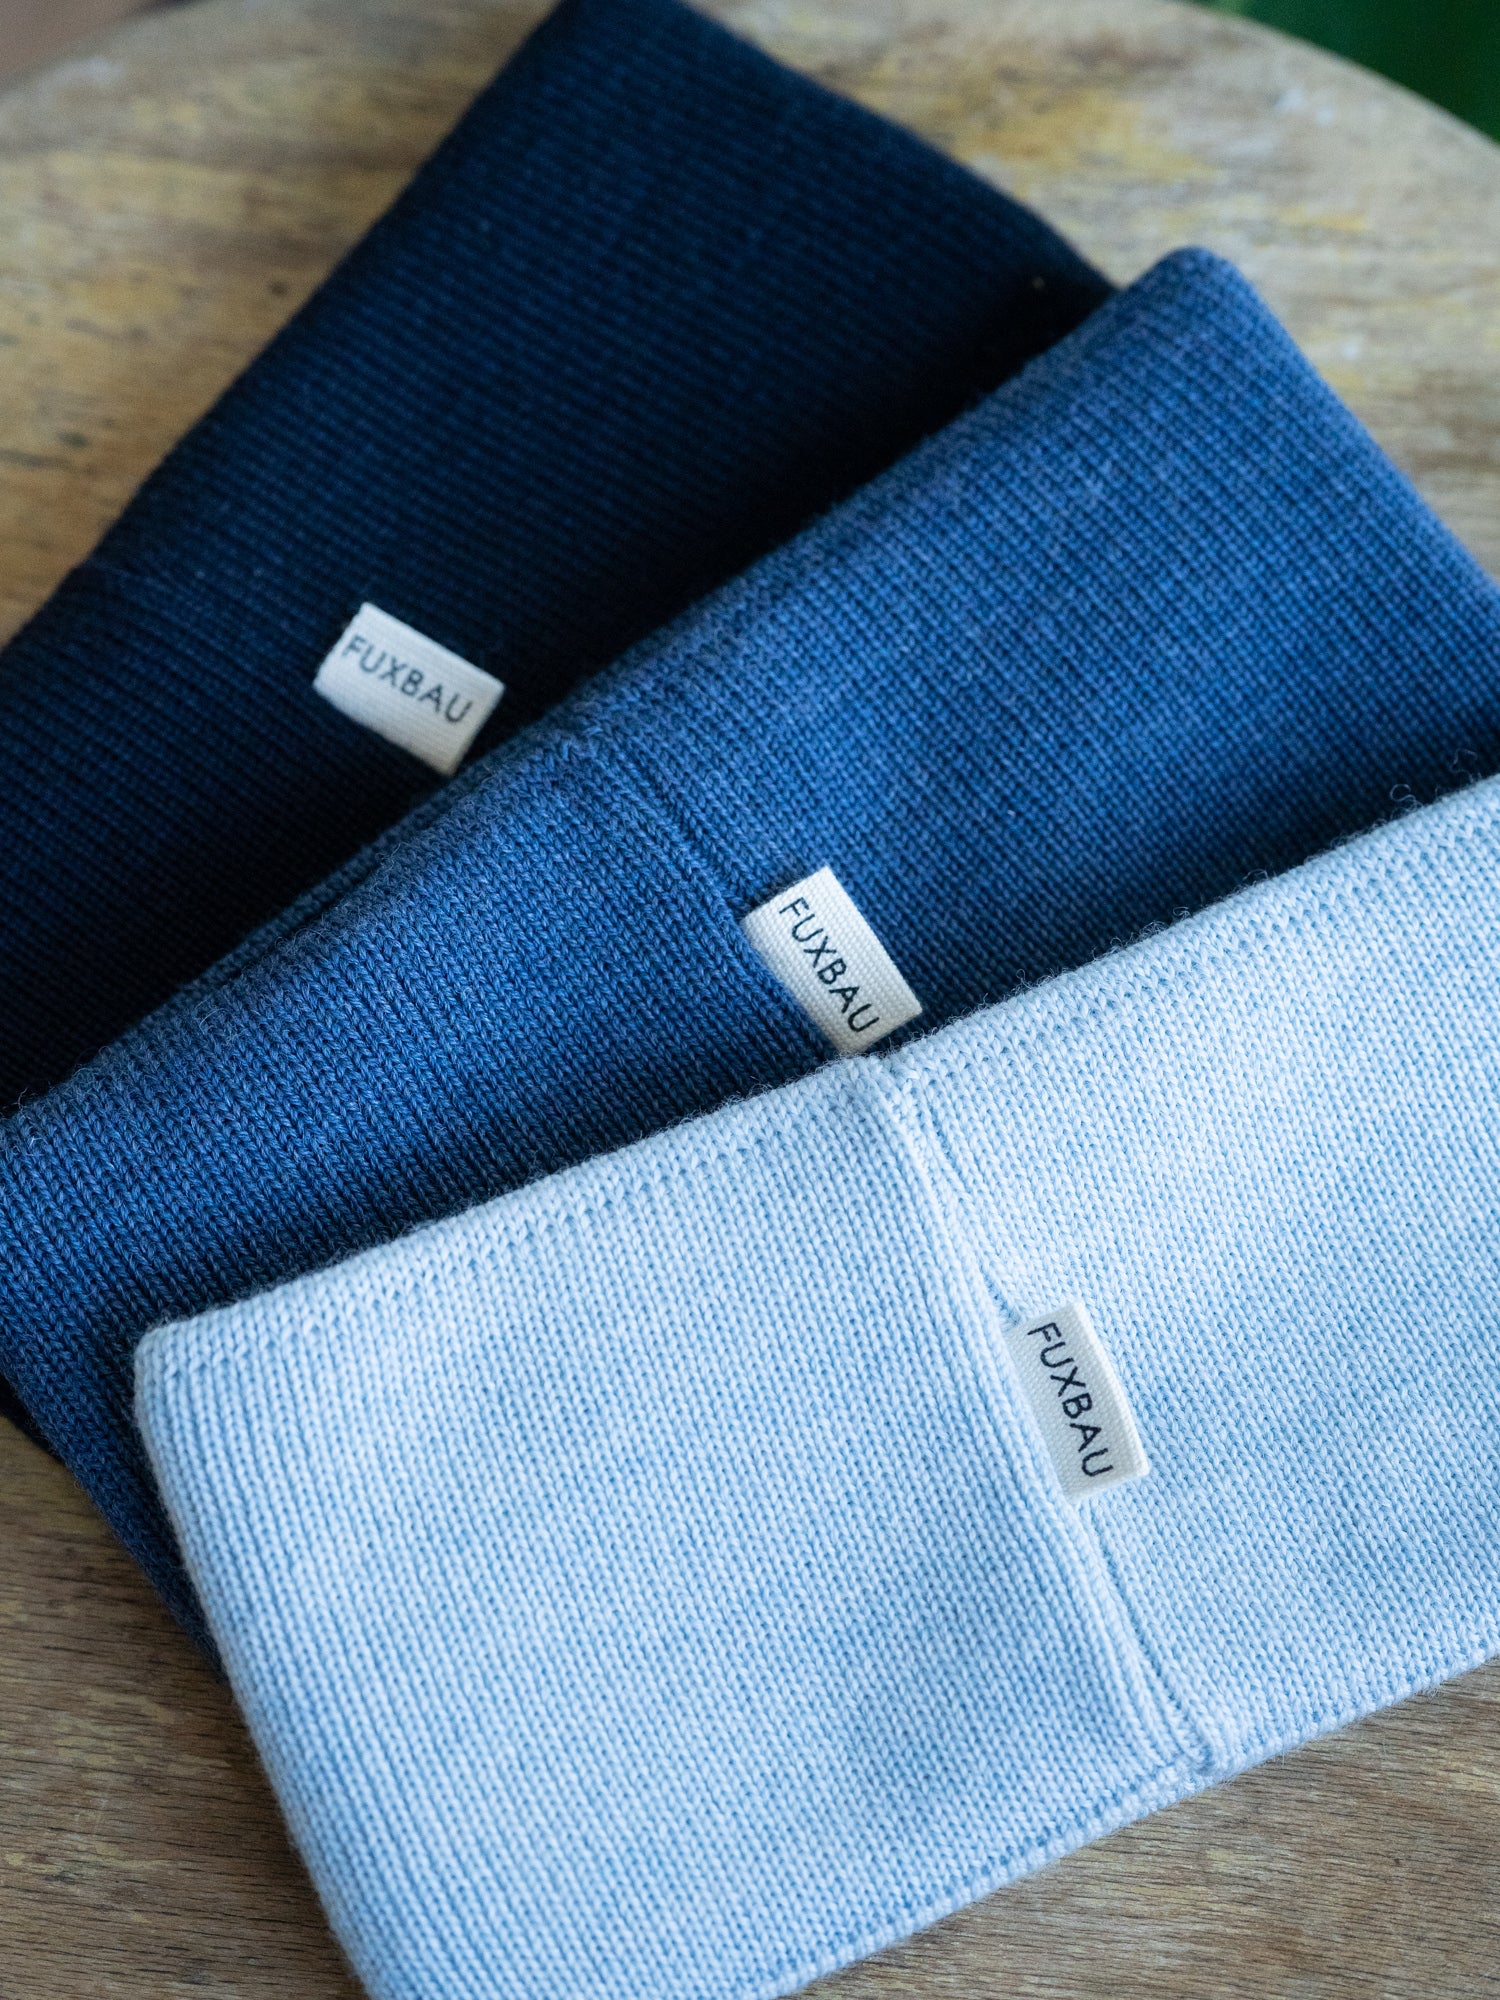 Nachhaltige FUXBAU Fair Fashion Merino Stirnbänder in den Farben navy, nachtblau und eisblau. Gestrickt in Norddeutschland aus 100% GOTS zertifizierter Merino Schurwolle.